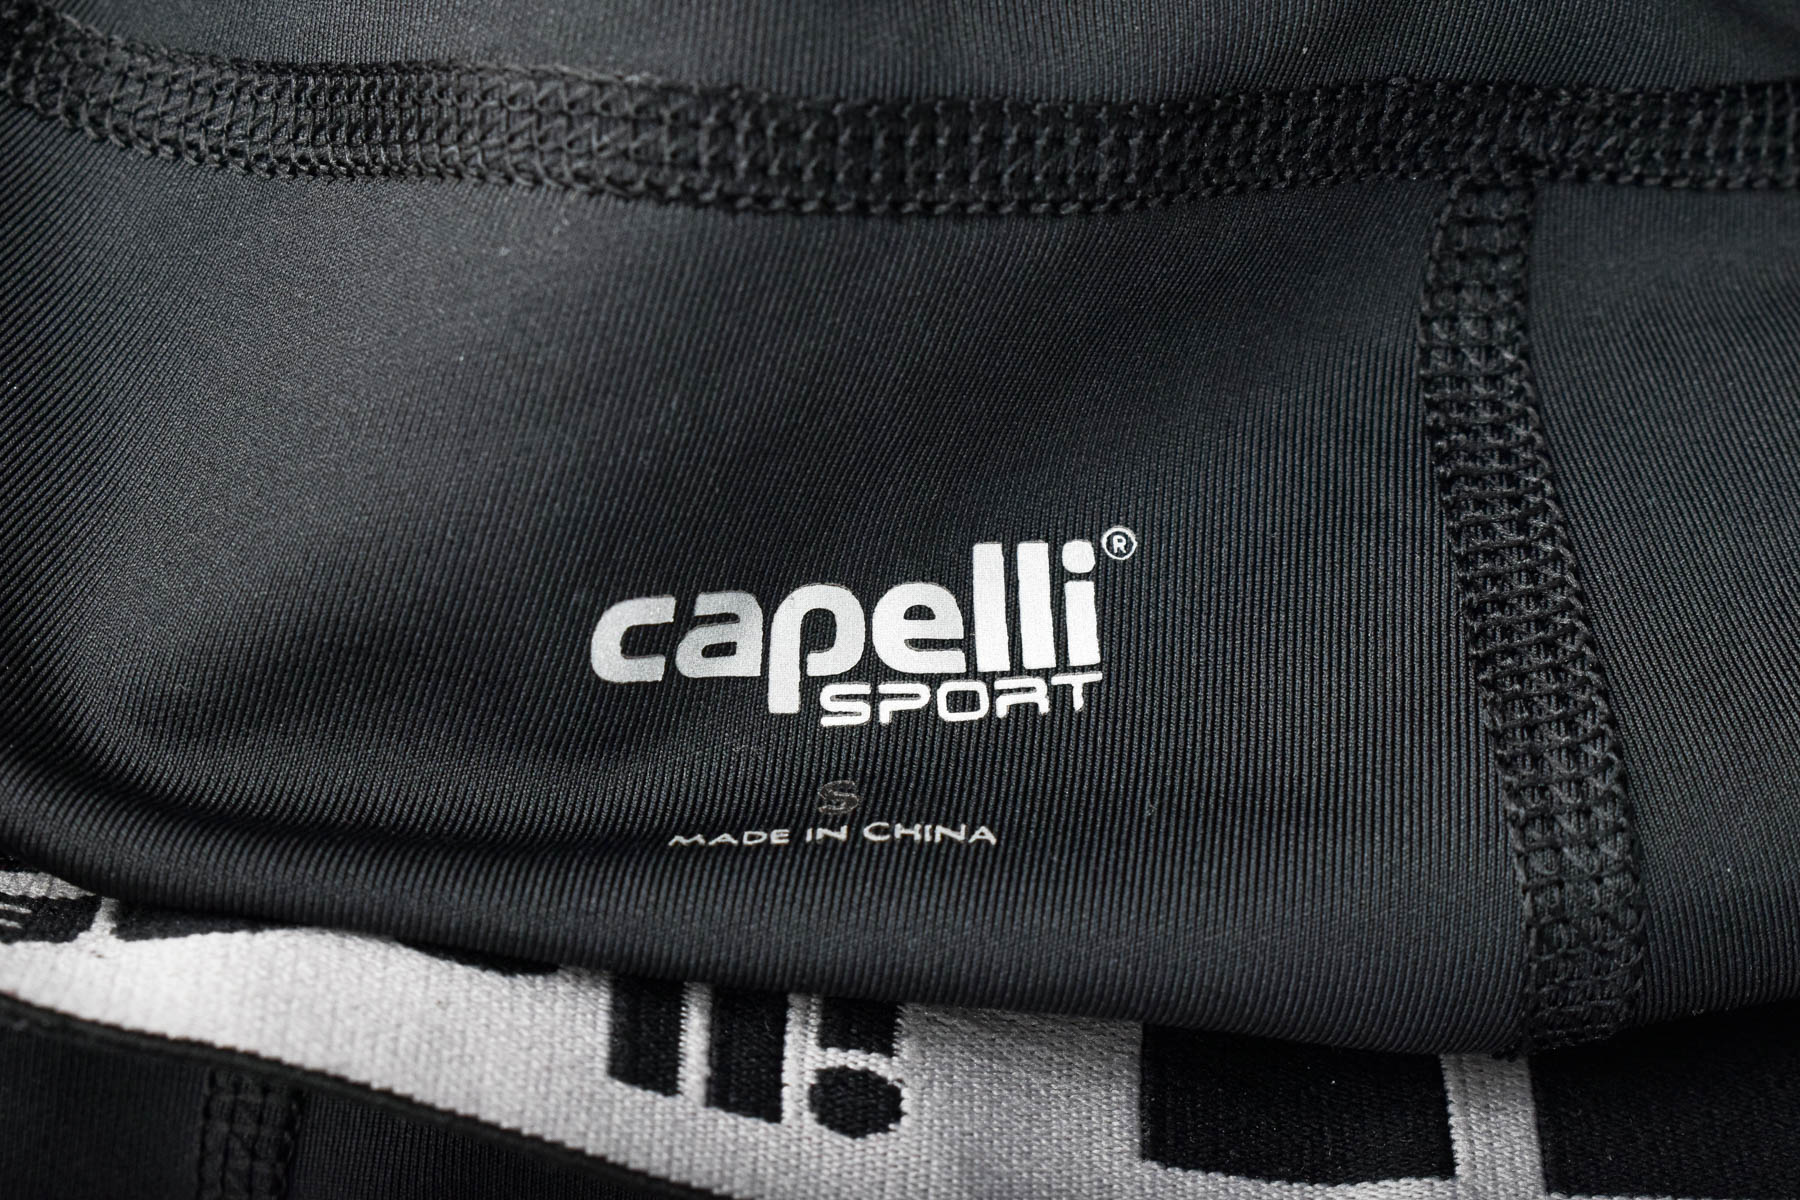 Leggings - Capelli sport - 2